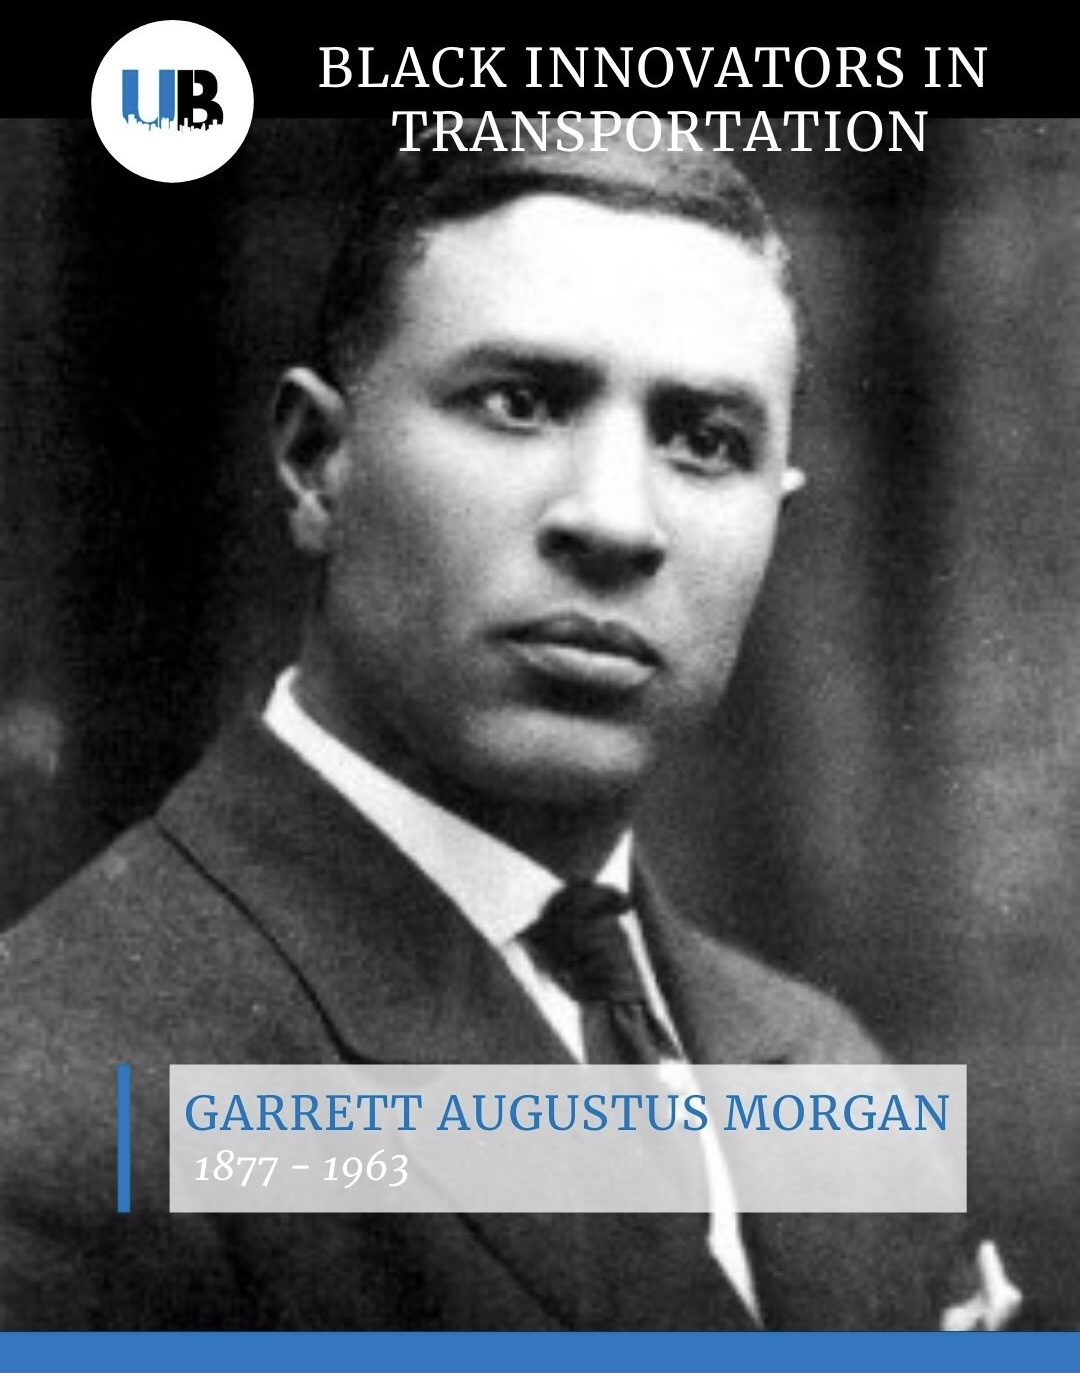 Garrett Augustus Morgan